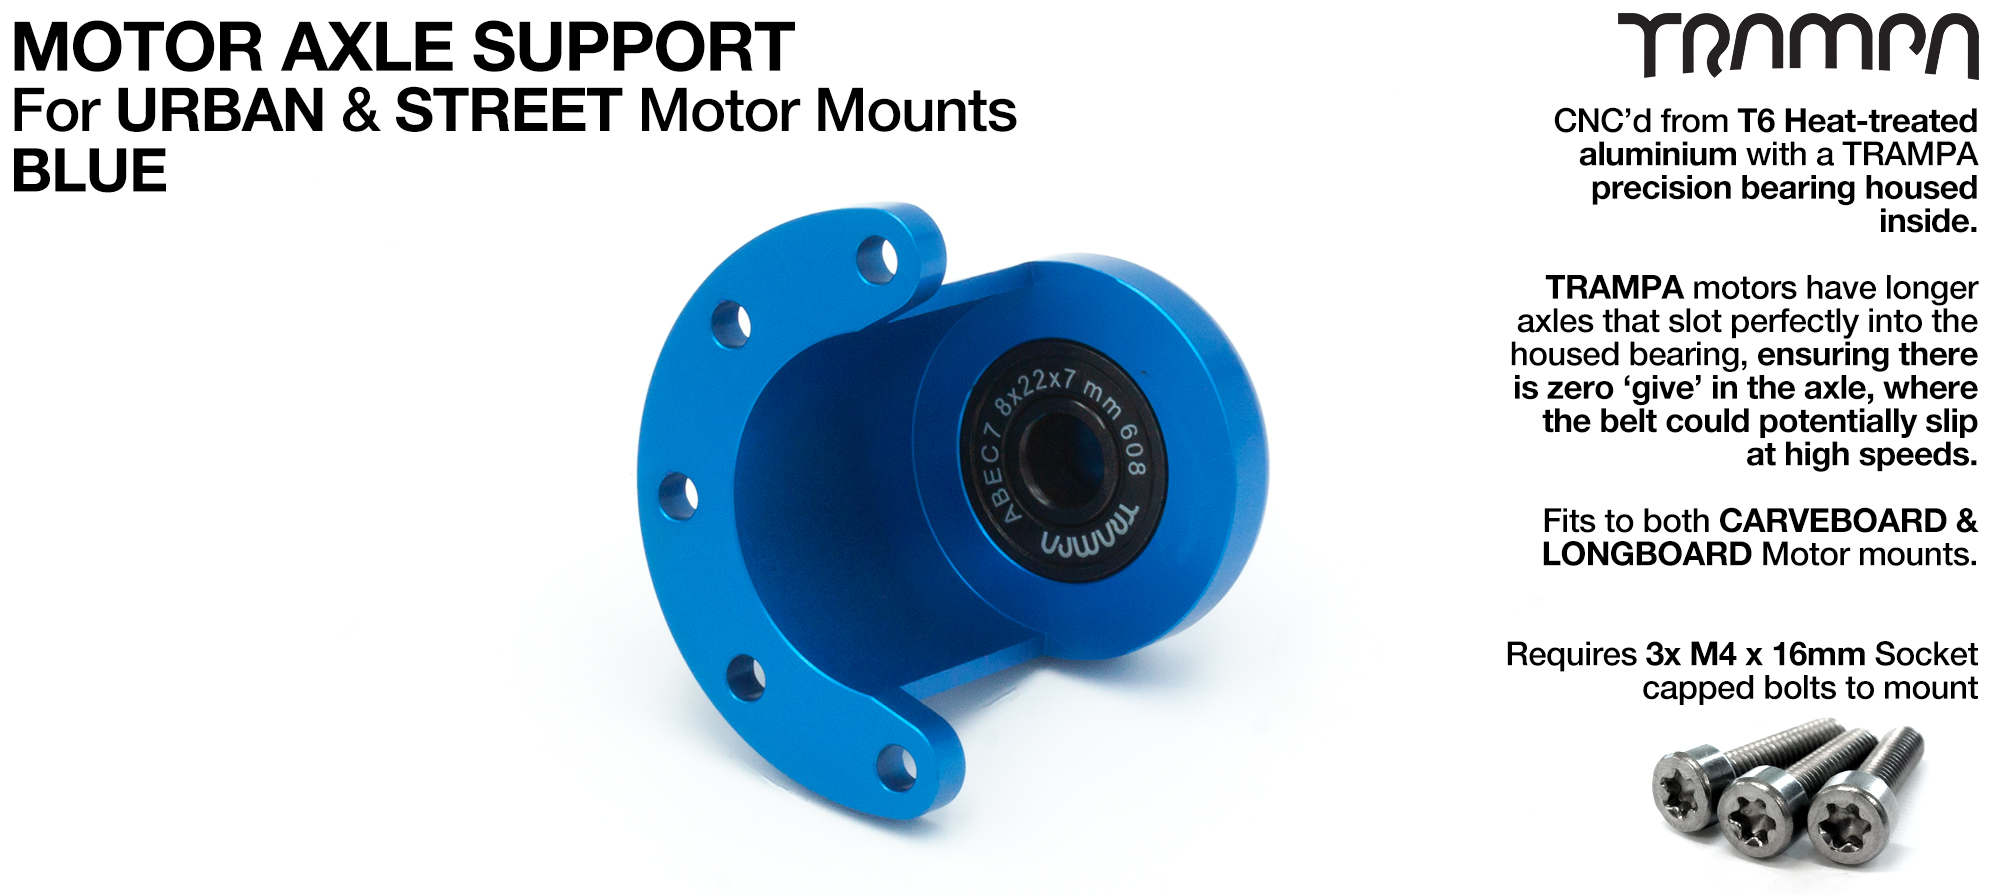 ORRSOM Longboard Motor Axle Support for Motor Mounts  - BLUE